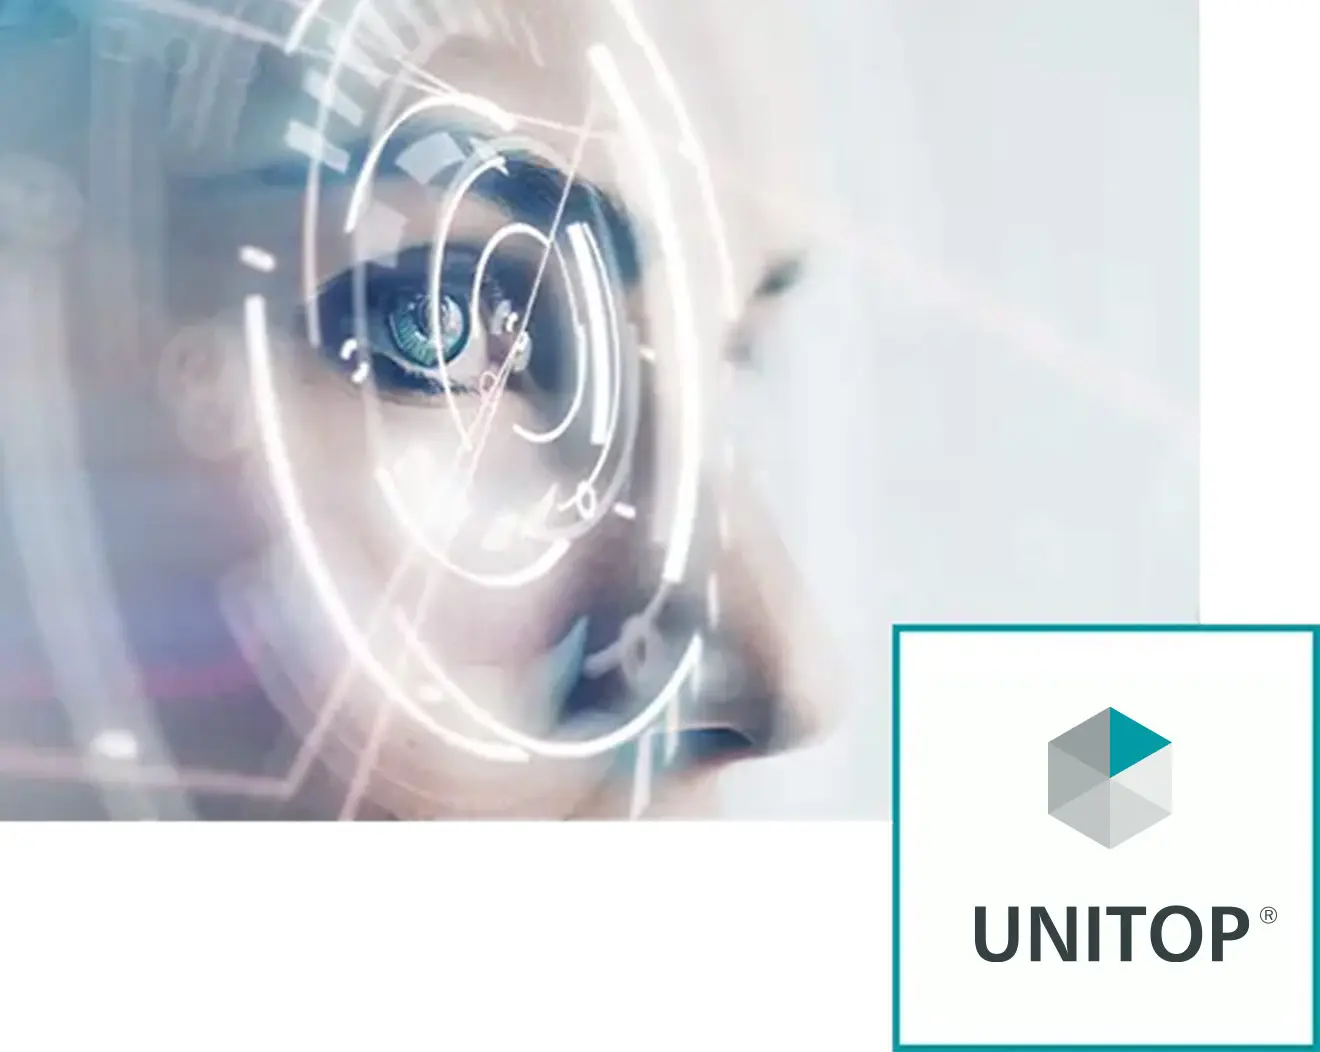 Digitales Bild eines weiblichen Auges mit futuristischen, kreisförmigen Grafiken und das Logo von UNITOP in der unteren rechten Ecke